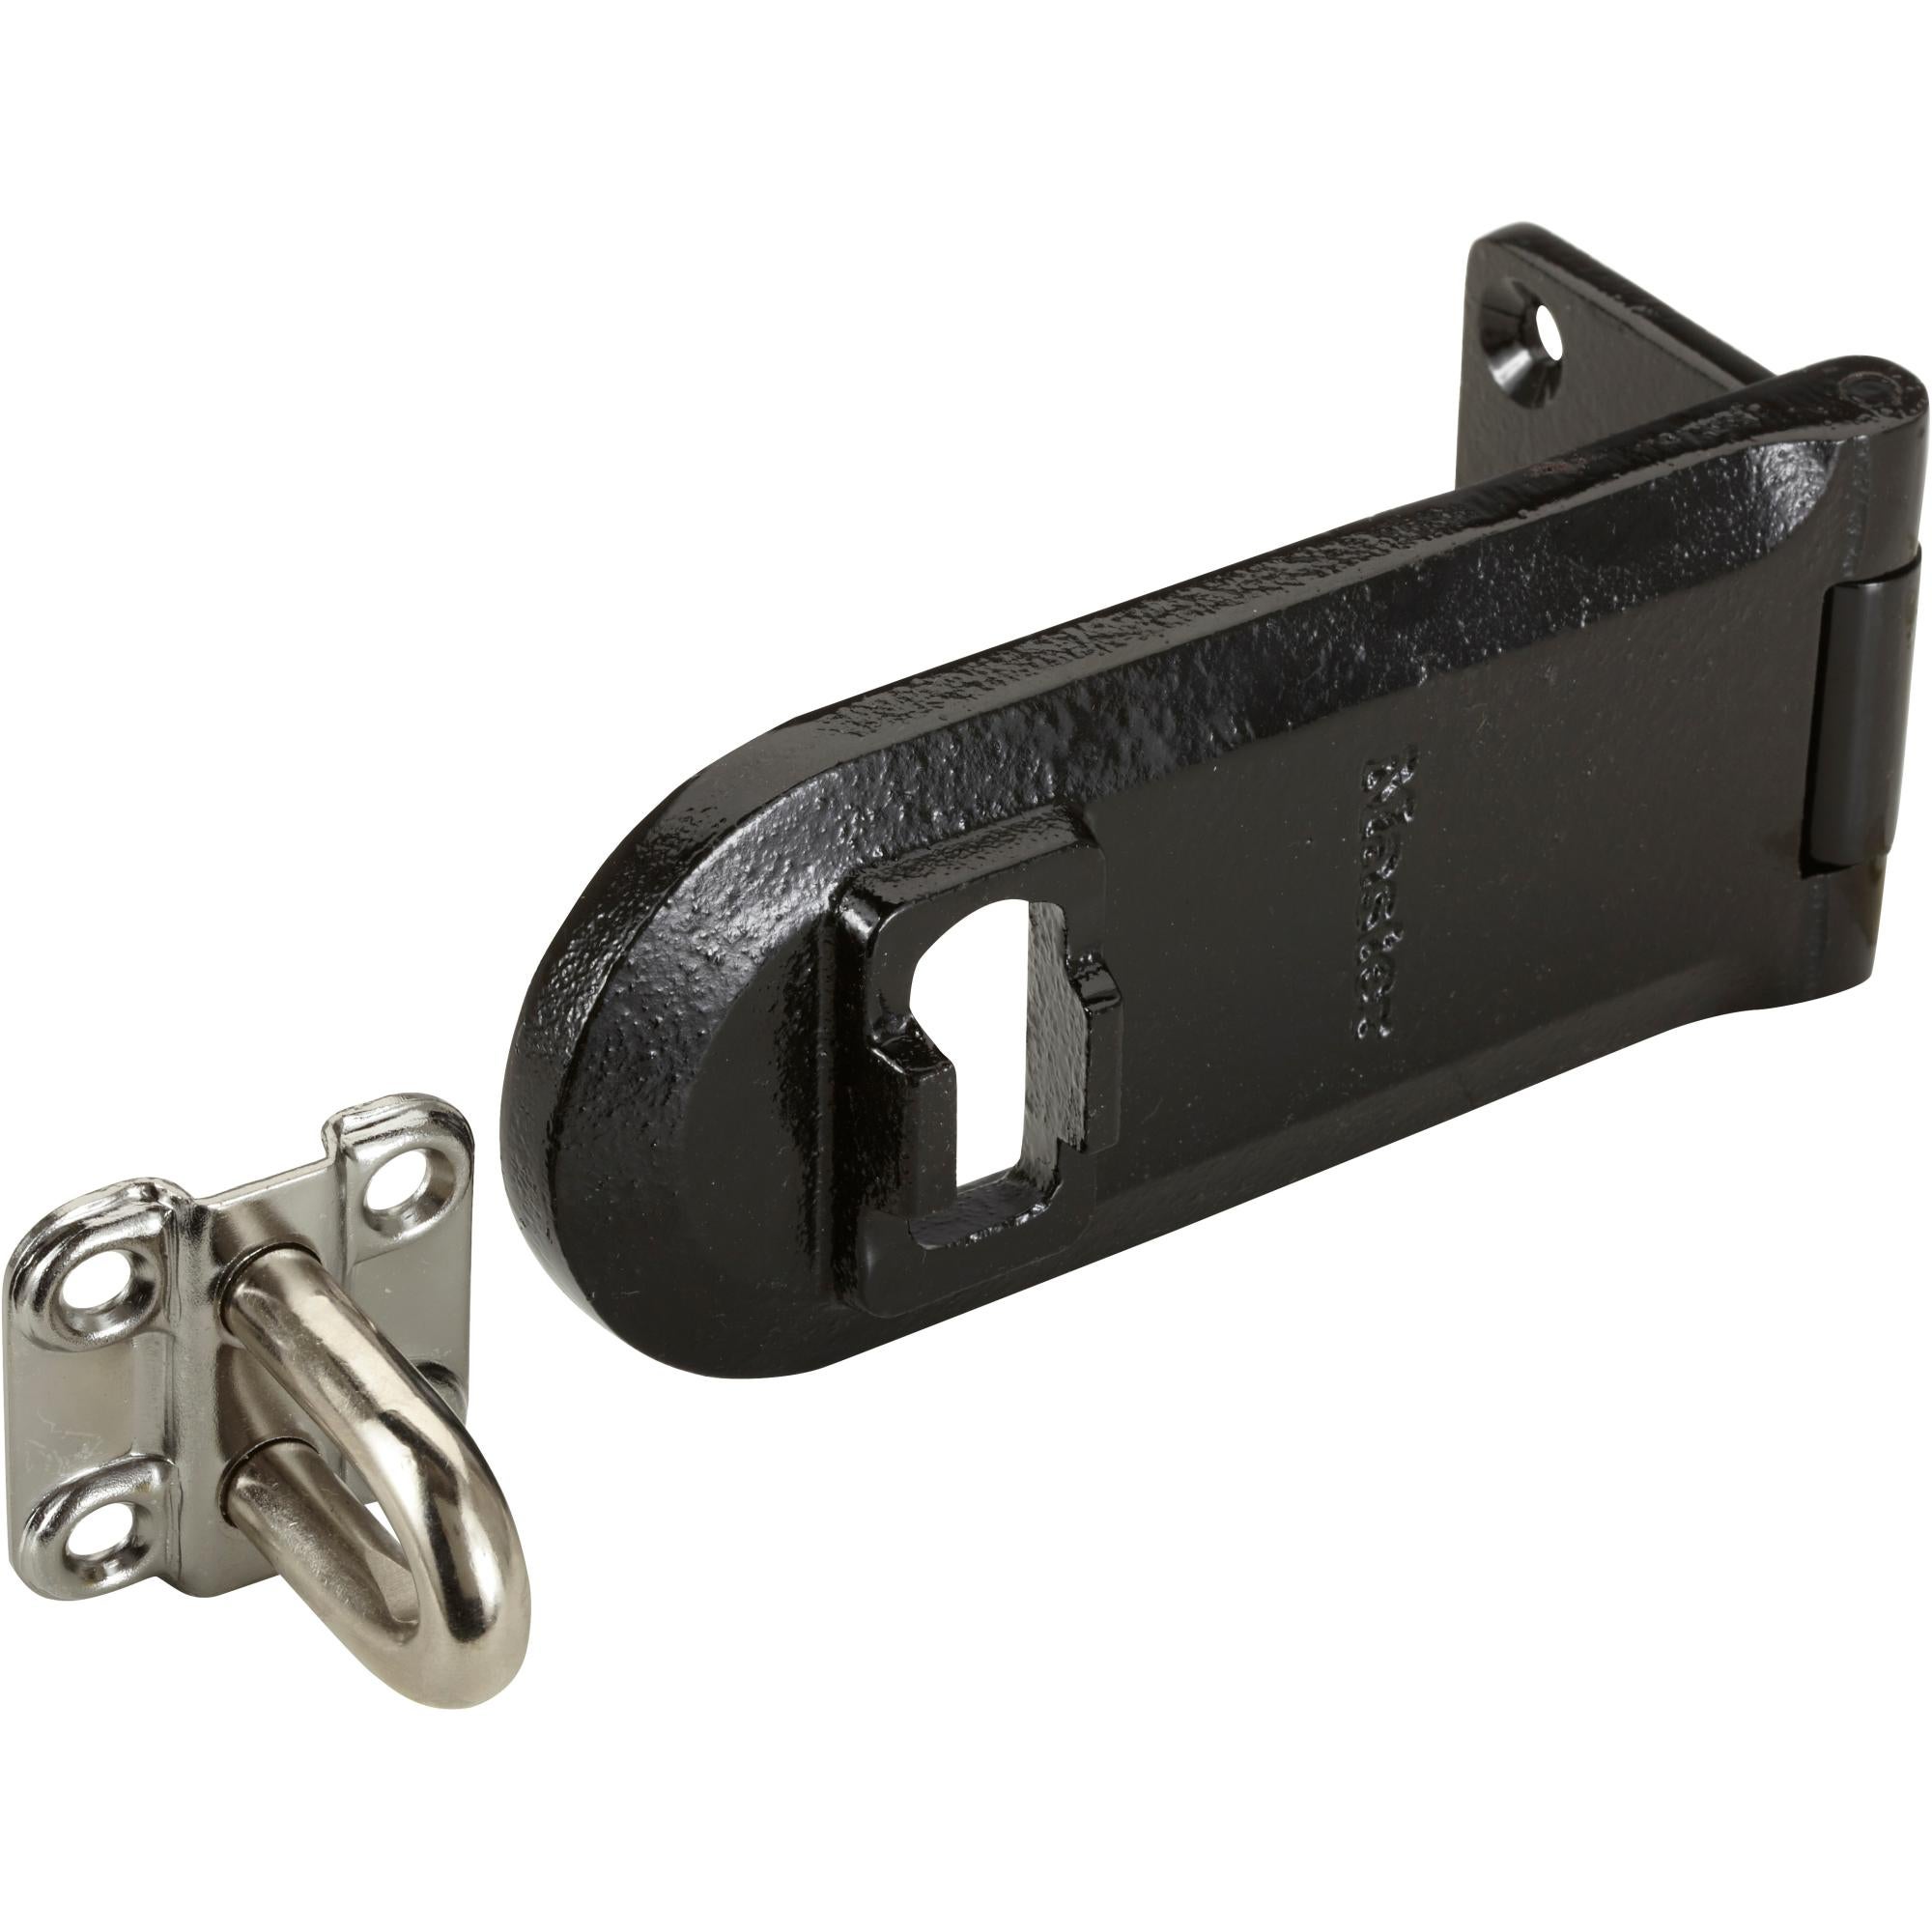 Moraillon et loquet Master Lock avec cadenas noir 110mm, Verrou et serrure